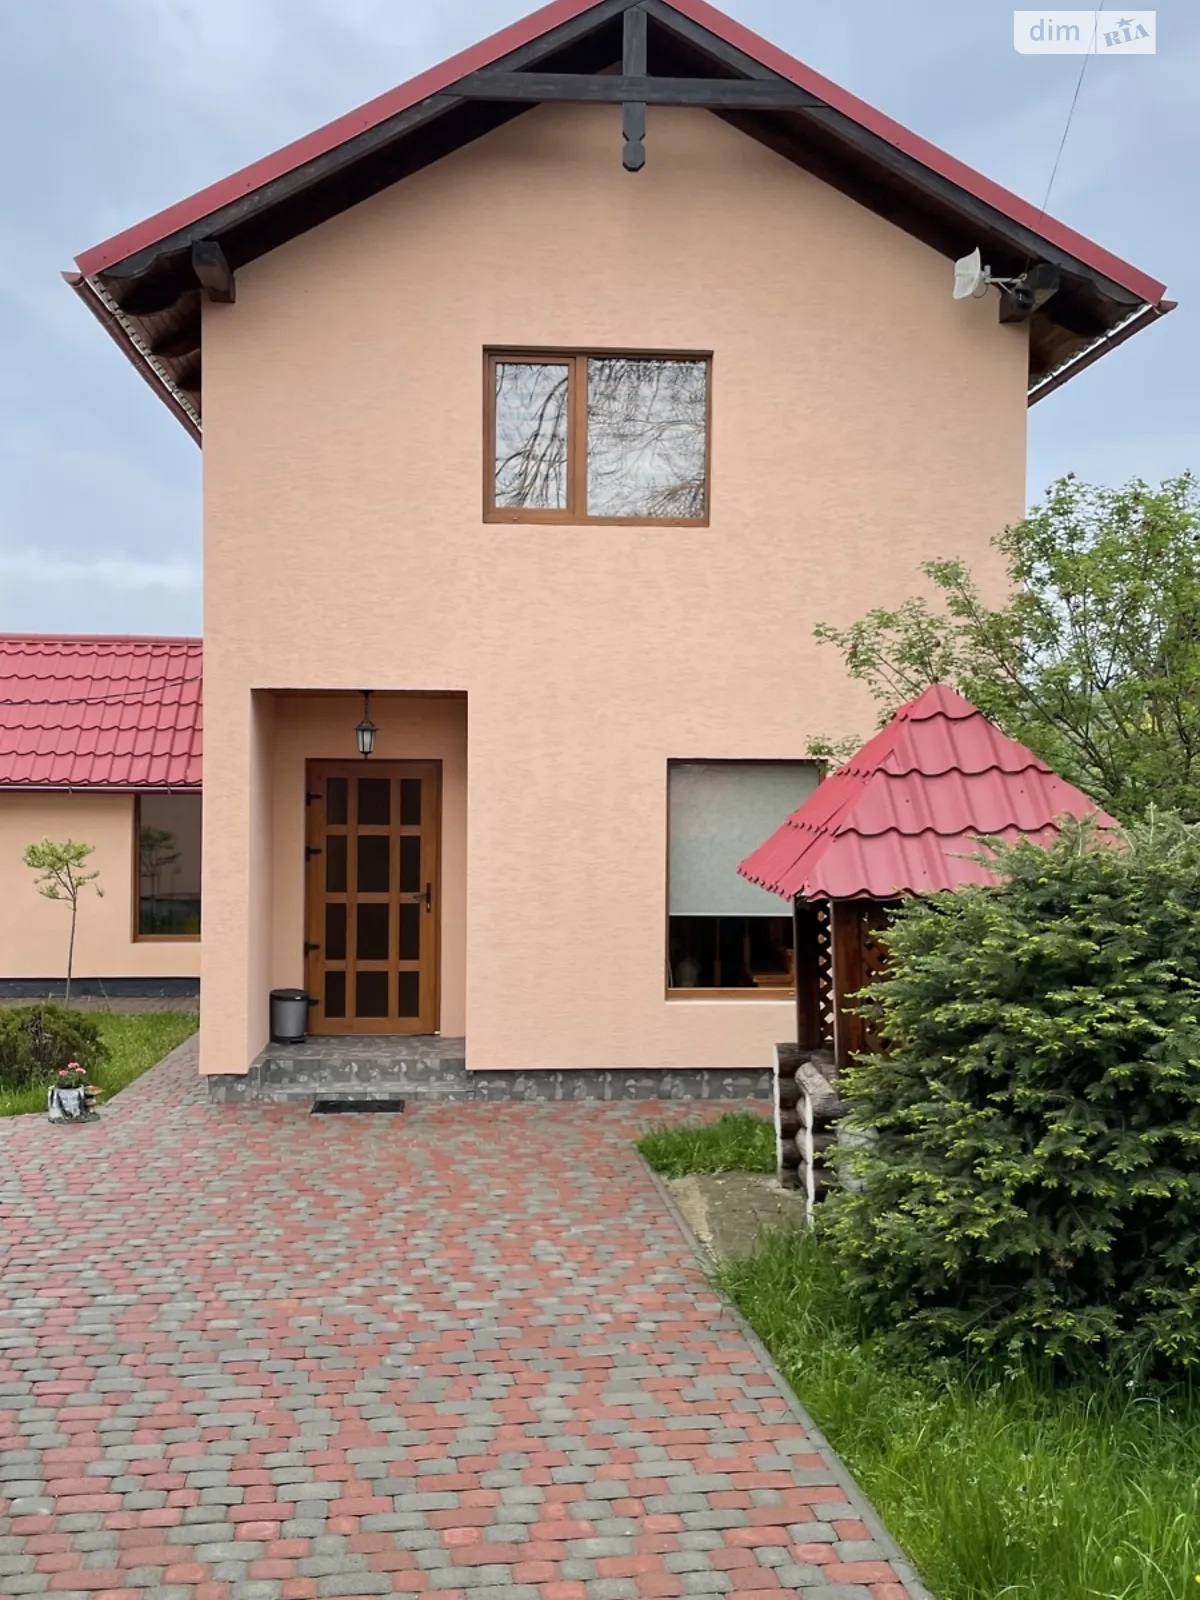 Сдается в аренду одноэтажный дом с подвалом, цена: 1800 грн